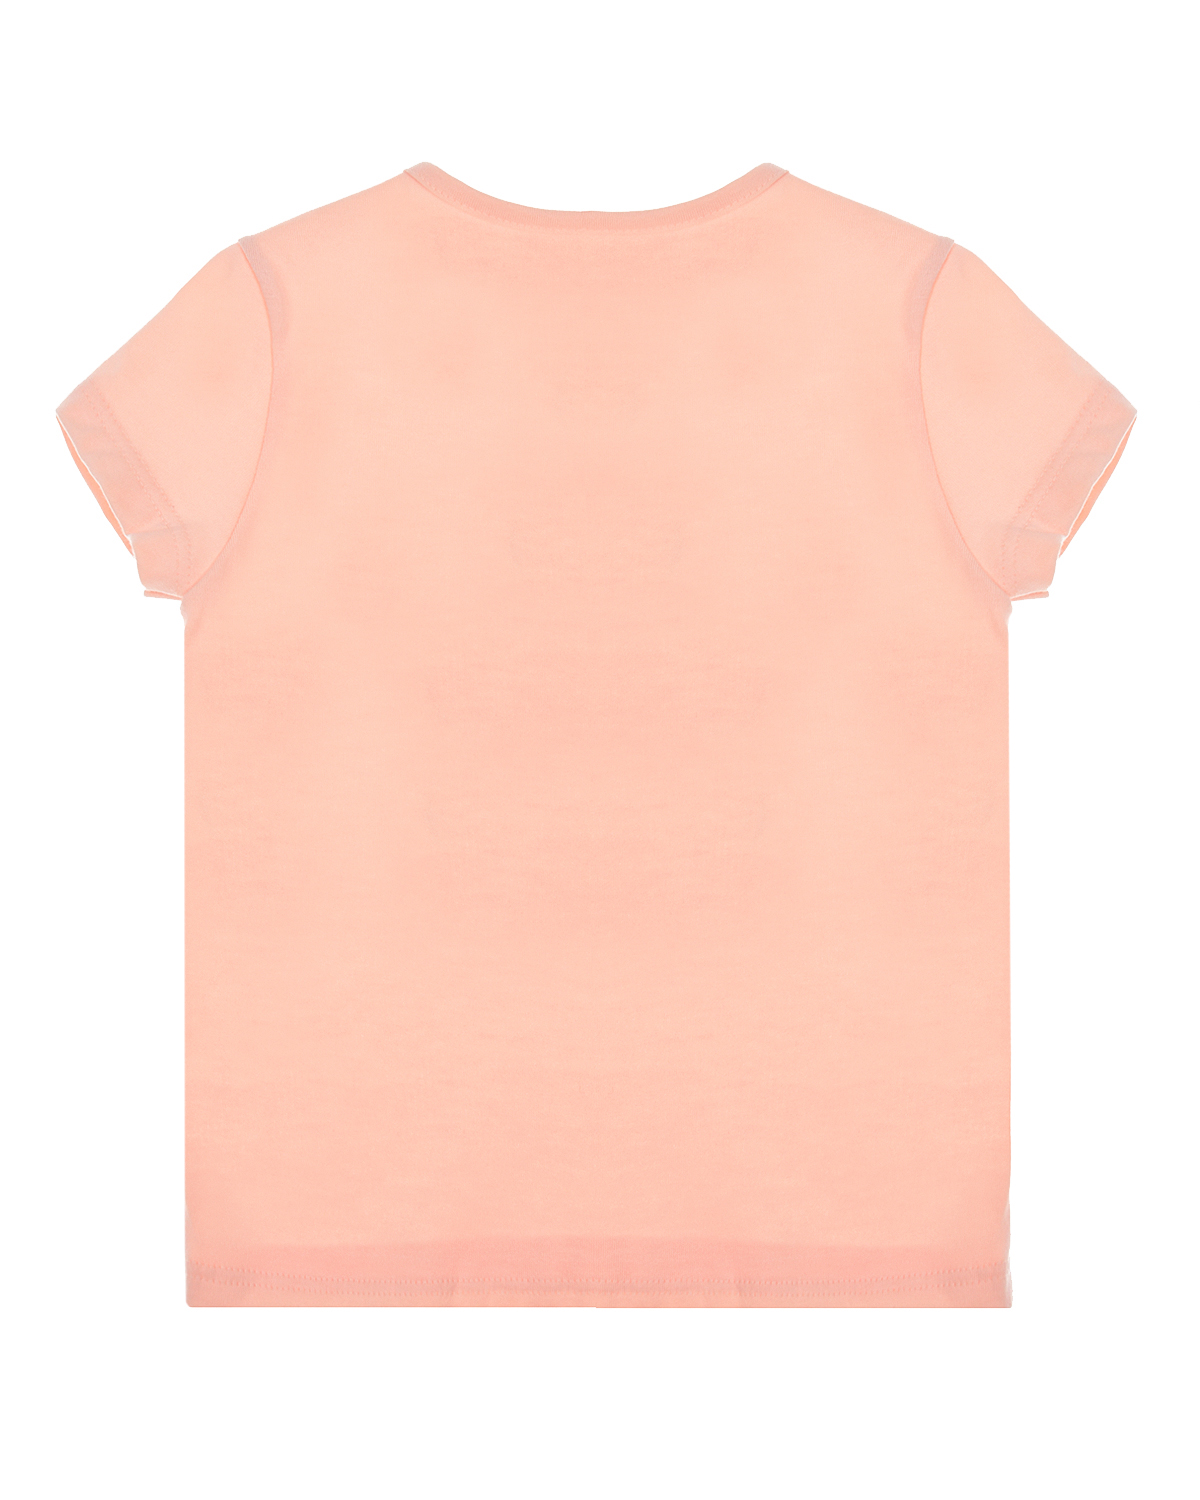 Розовая футболка с вышивкой "осьминог" Sanetta Kidswear детская, размер 62, цвет розовый - фото 2